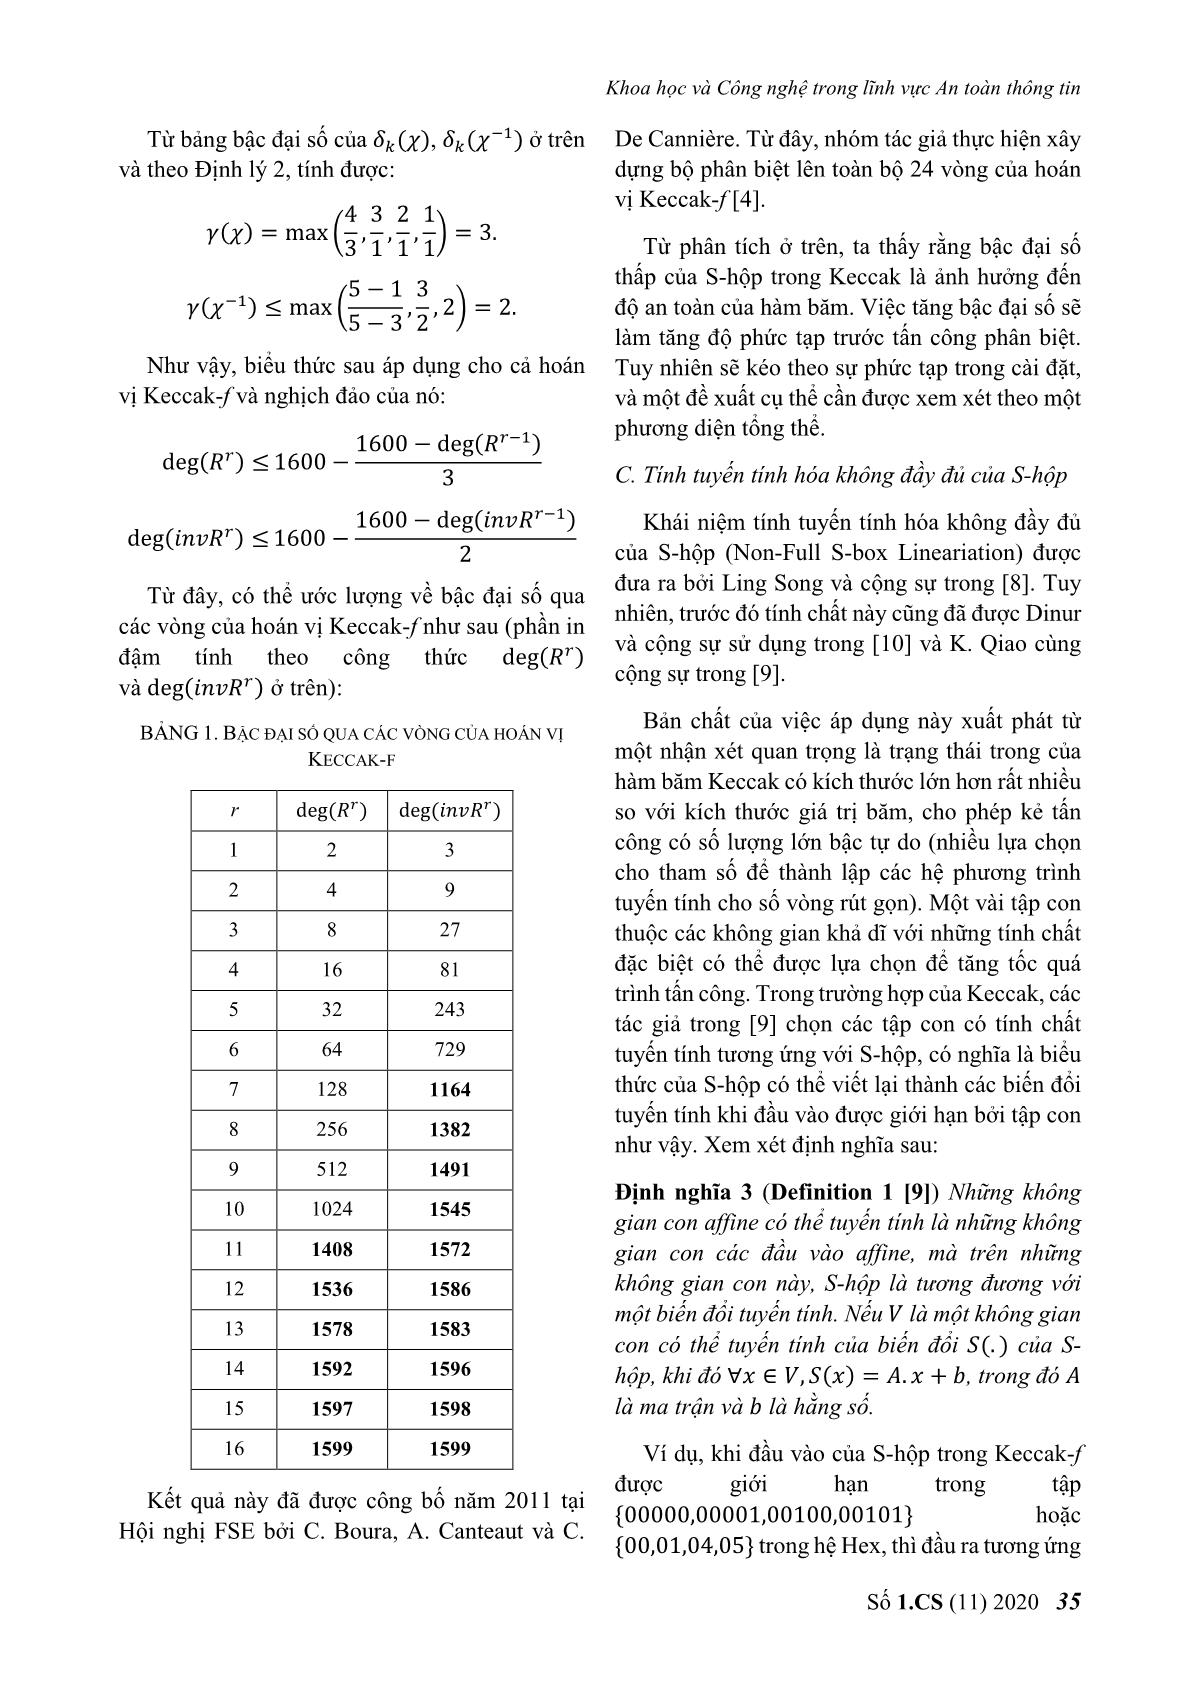 Đề xuất S - Hộp có tính chất mật mã tốt cho hoán vị của hàm băm keccak trang 4